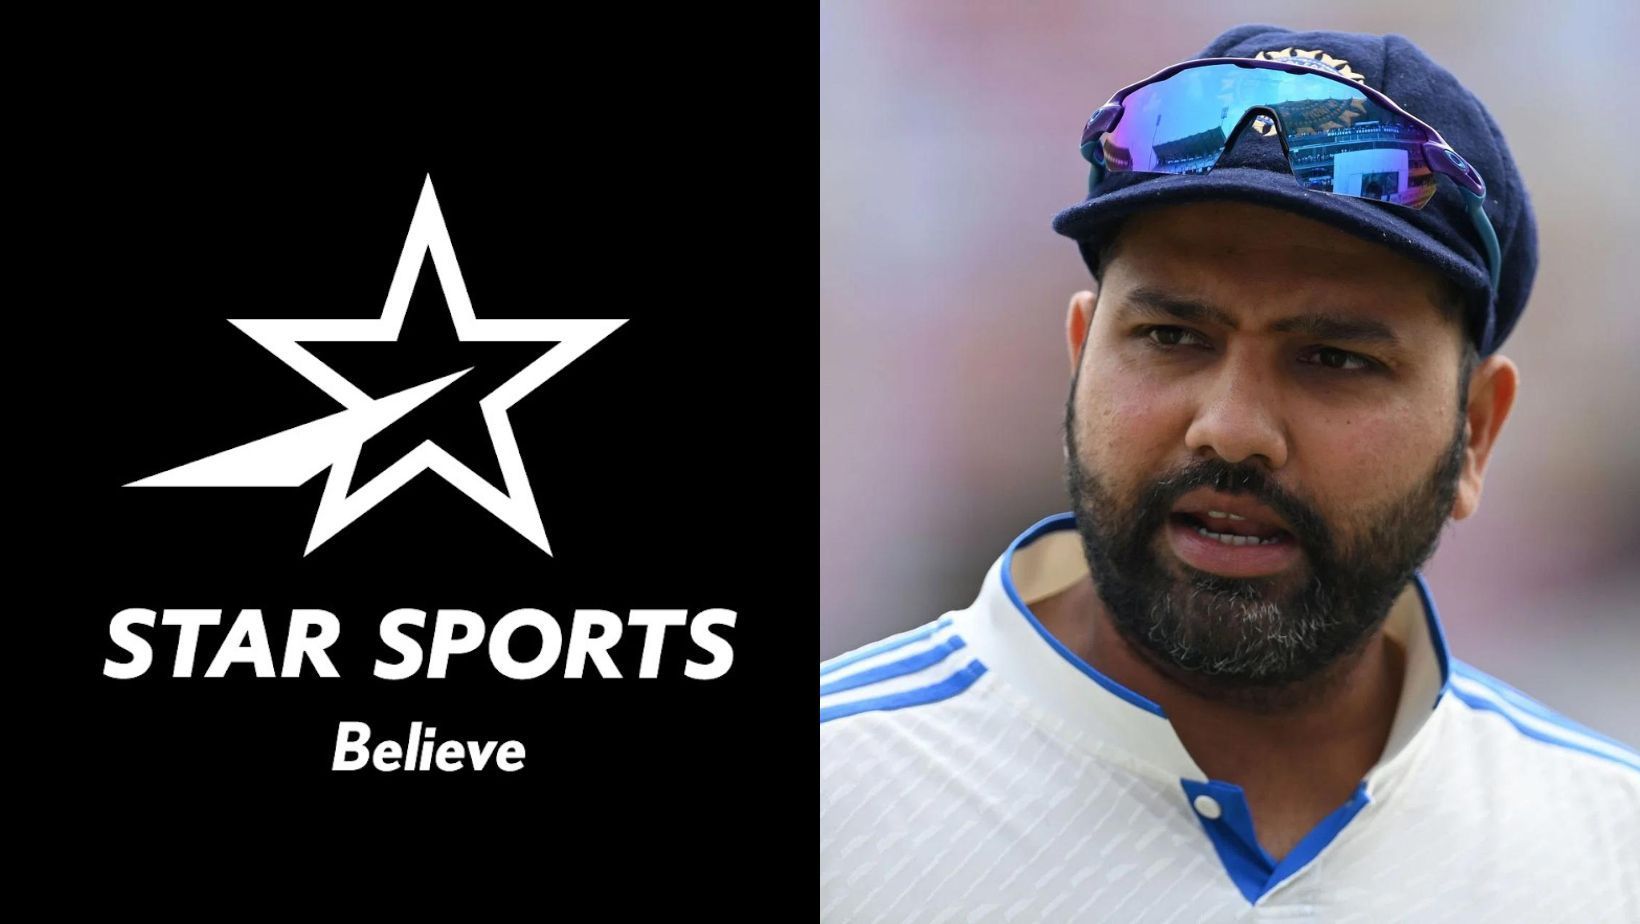 Star Sports logo (L, PC: Star Sports) and Rohit Sharma.